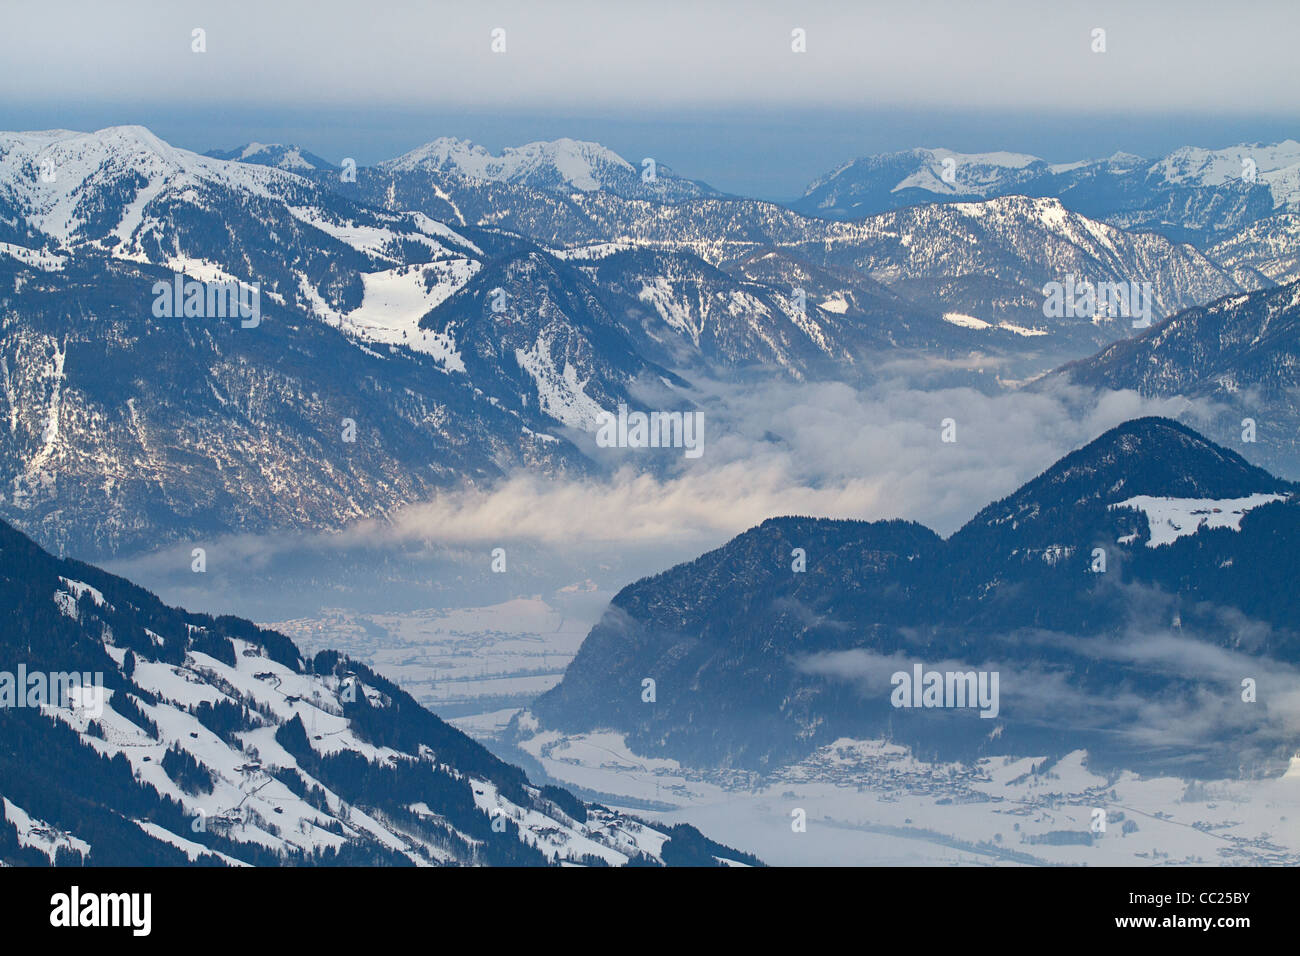 View over Zillertal valley from Kaltenbach Hochzillertal ski region, Tyrol, Austria Stock Photo